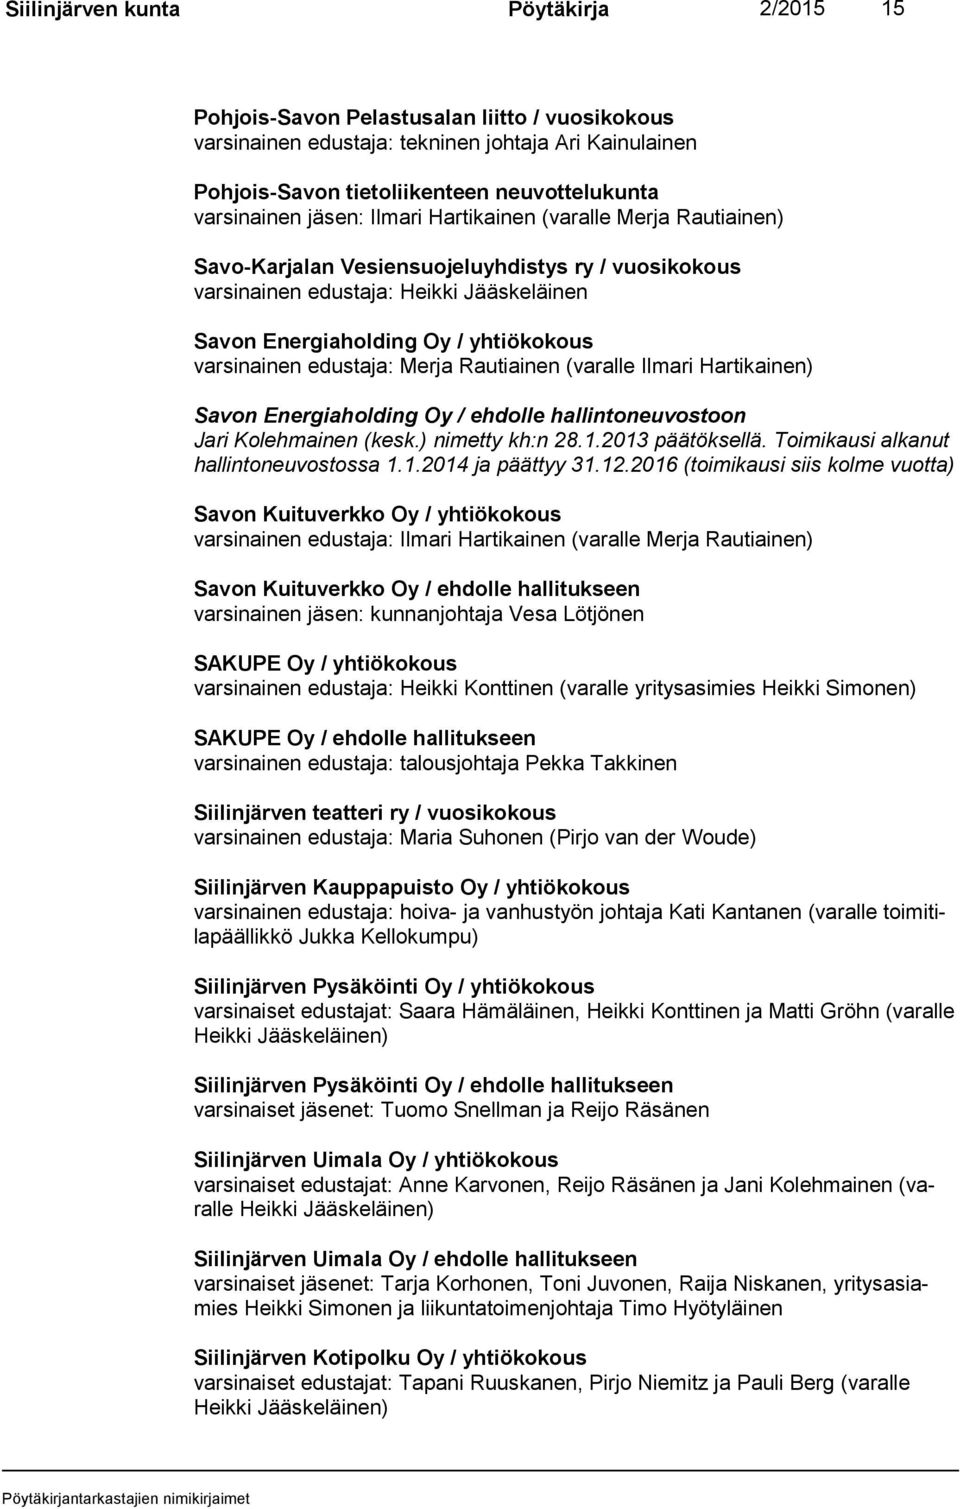 varsinainen edustaja: Merja Rautiainen (varalle Ilmari Hartikainen) Savon Energiaholding Oy / ehdolle hallintoneuvostoon Jari Kolehmainen (kesk.) nimetty kh:n 28.1.2013 päätöksellä.